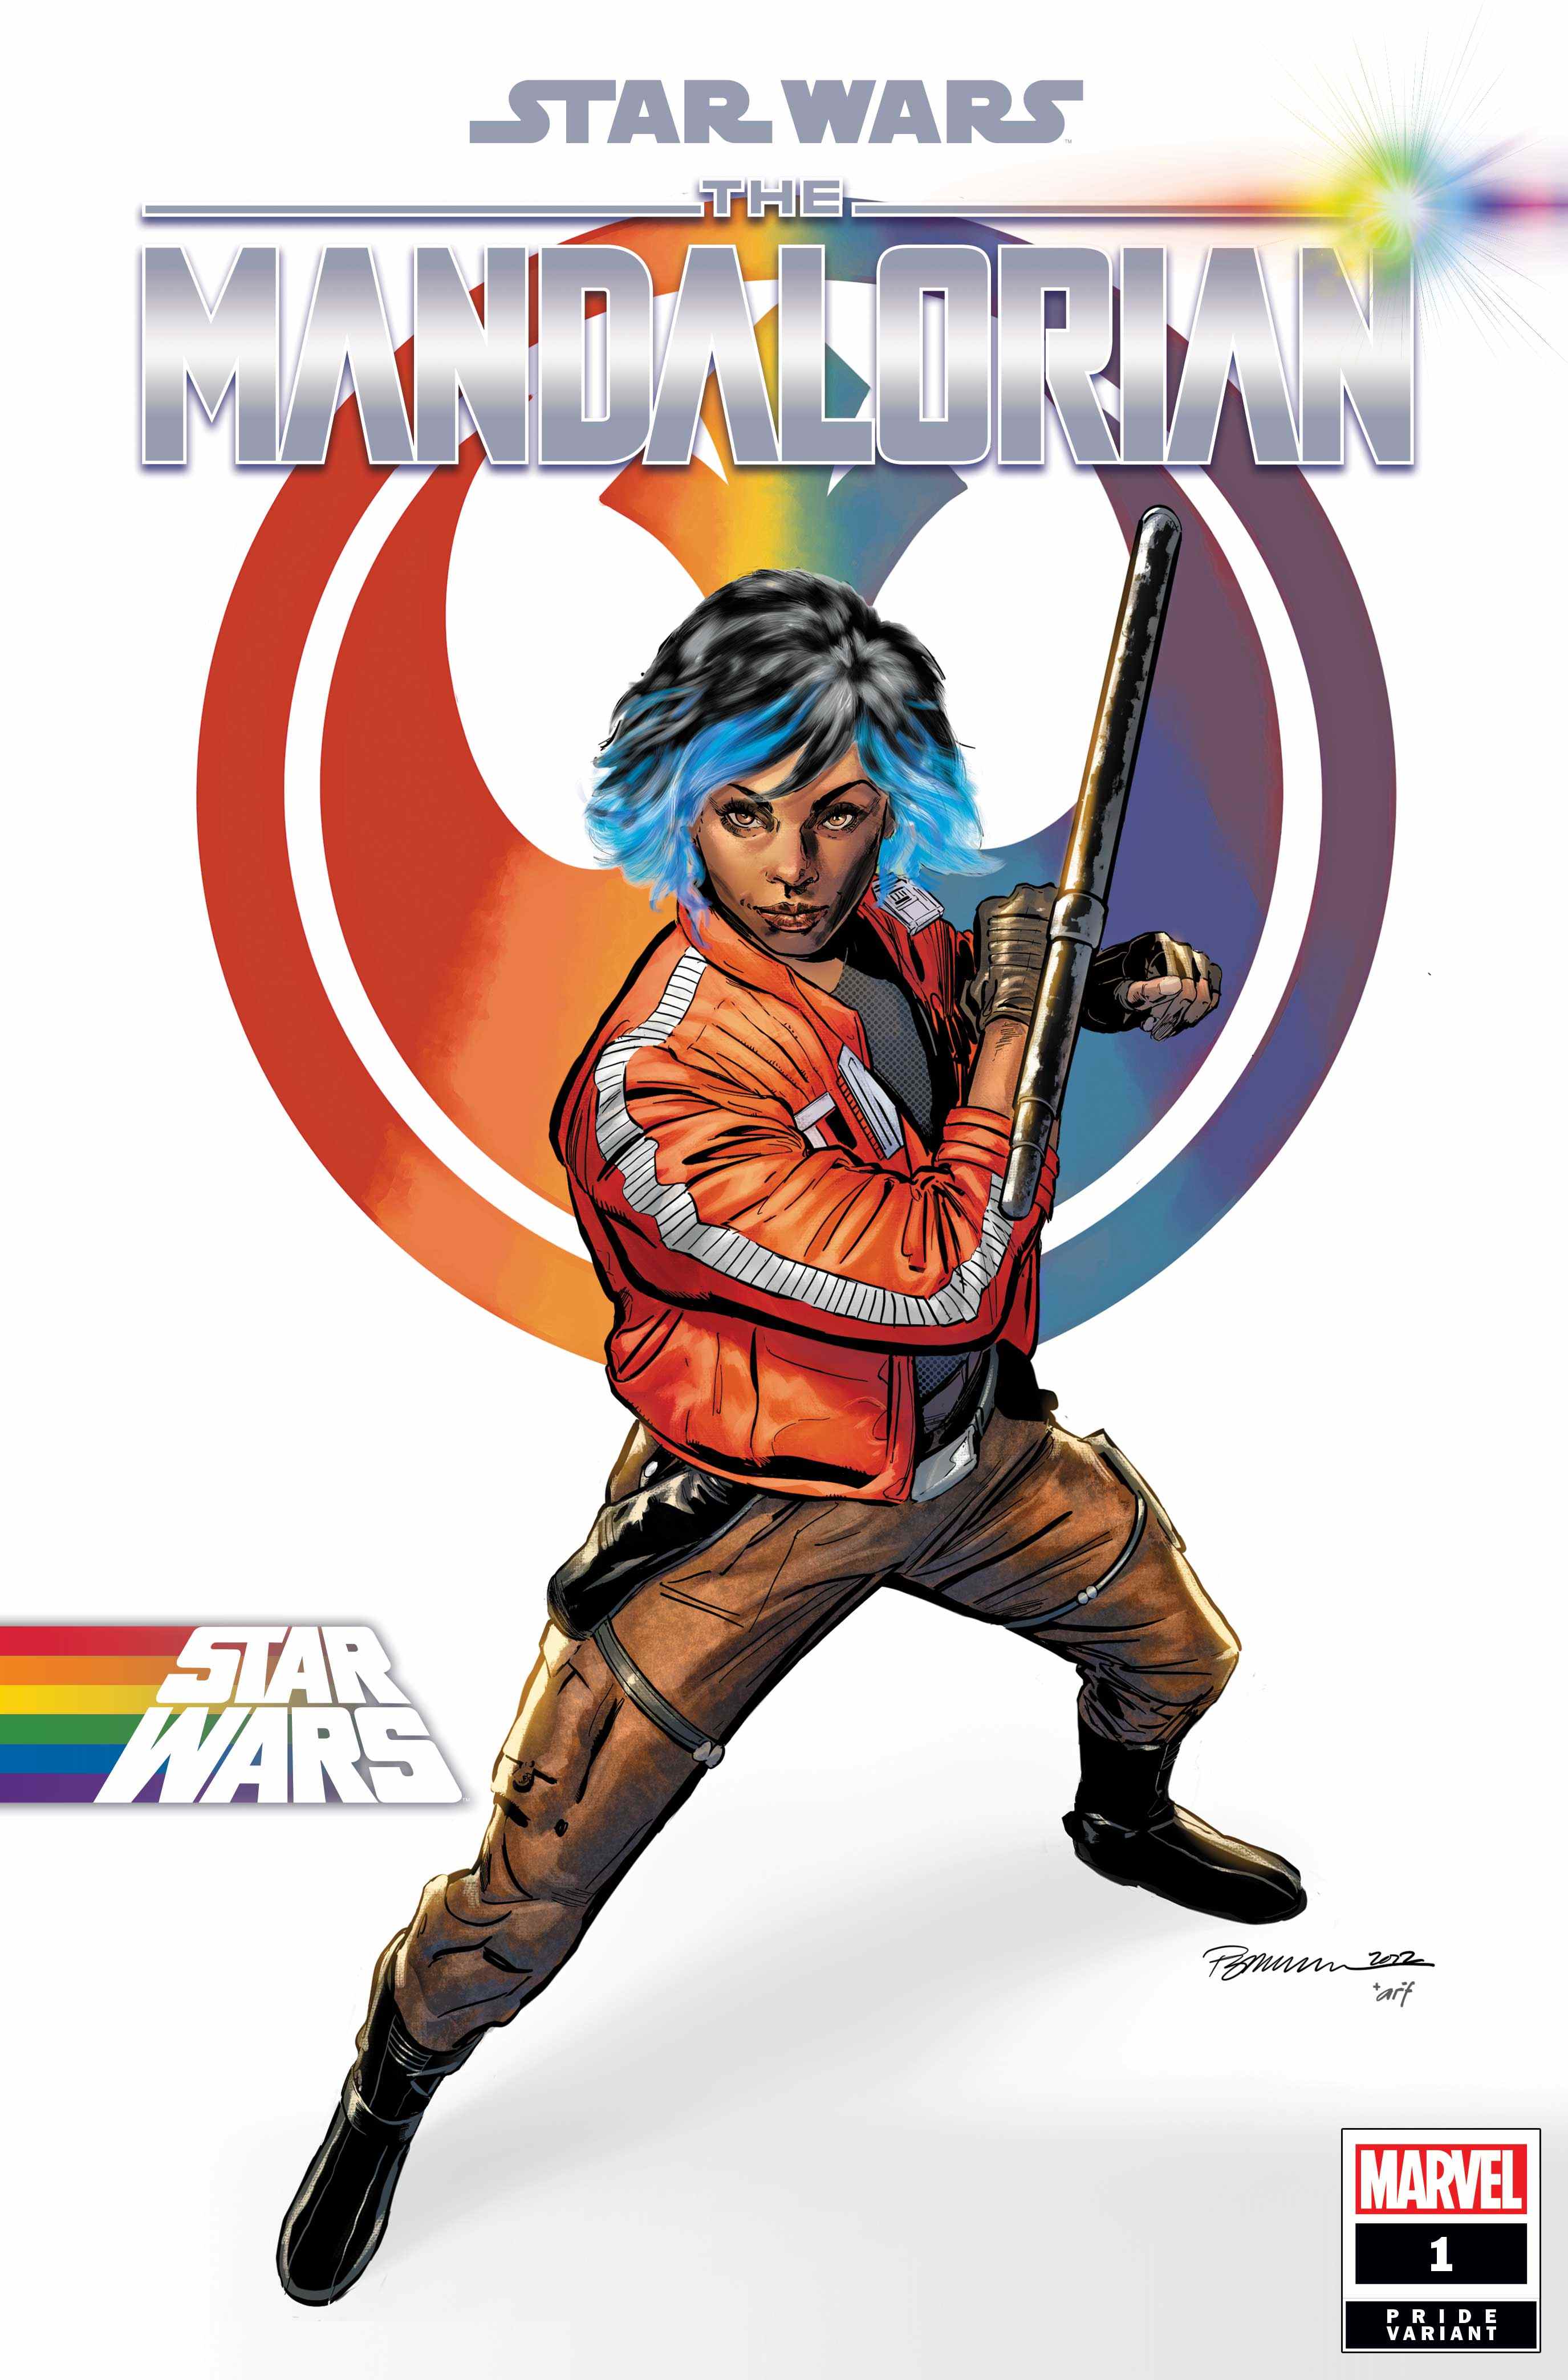 Couverture de la variante Star Wars: The Mandalorian # 1 Pride par Phil Jimenez et Arif Prianto